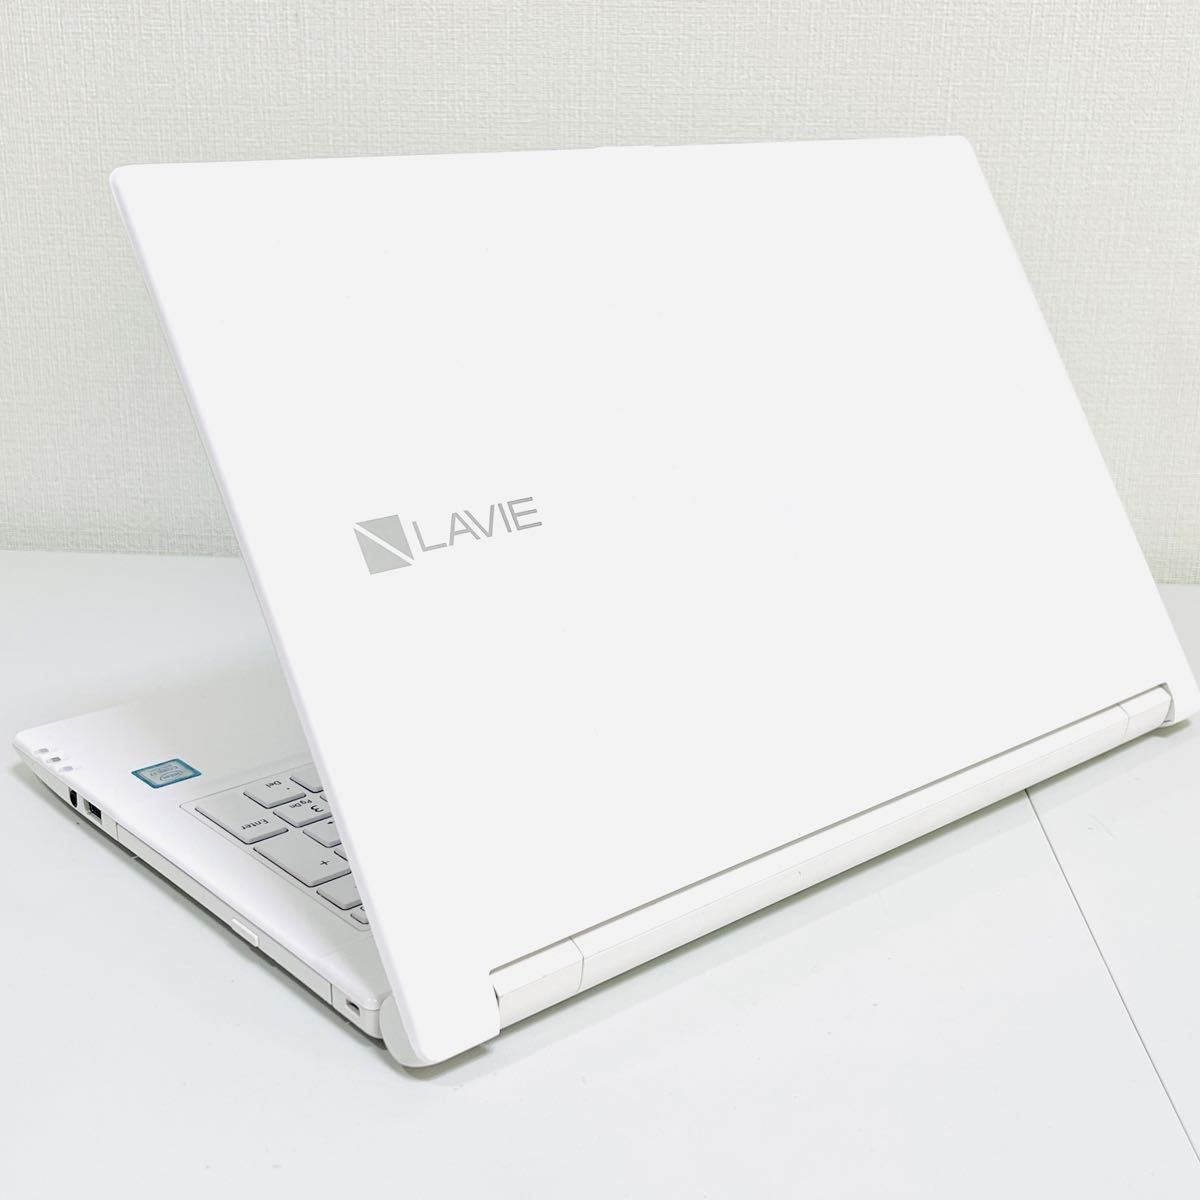 【美品】NEC Lavie 第8世代Core i7 メモリ8GB SSD256GB 初期設定済 設定マニュアル付